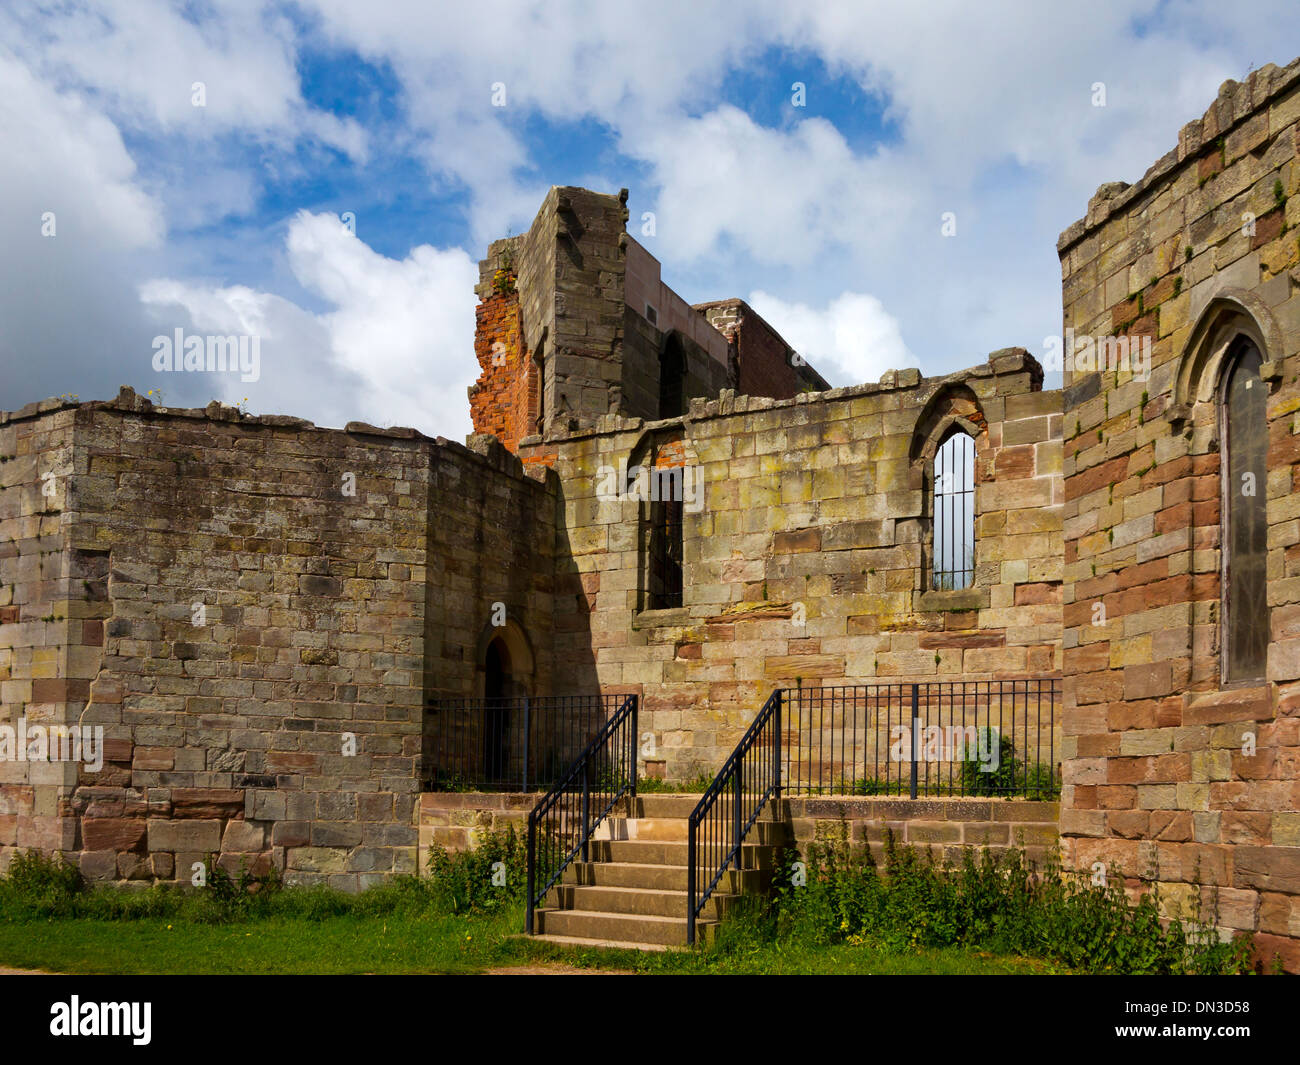 Teil der Ruinen von Stafford Castle Staffordshire England UK einen neugotischen Stein halten Sie basierend auf original mittelalterlichen Fundamenten Stockfoto